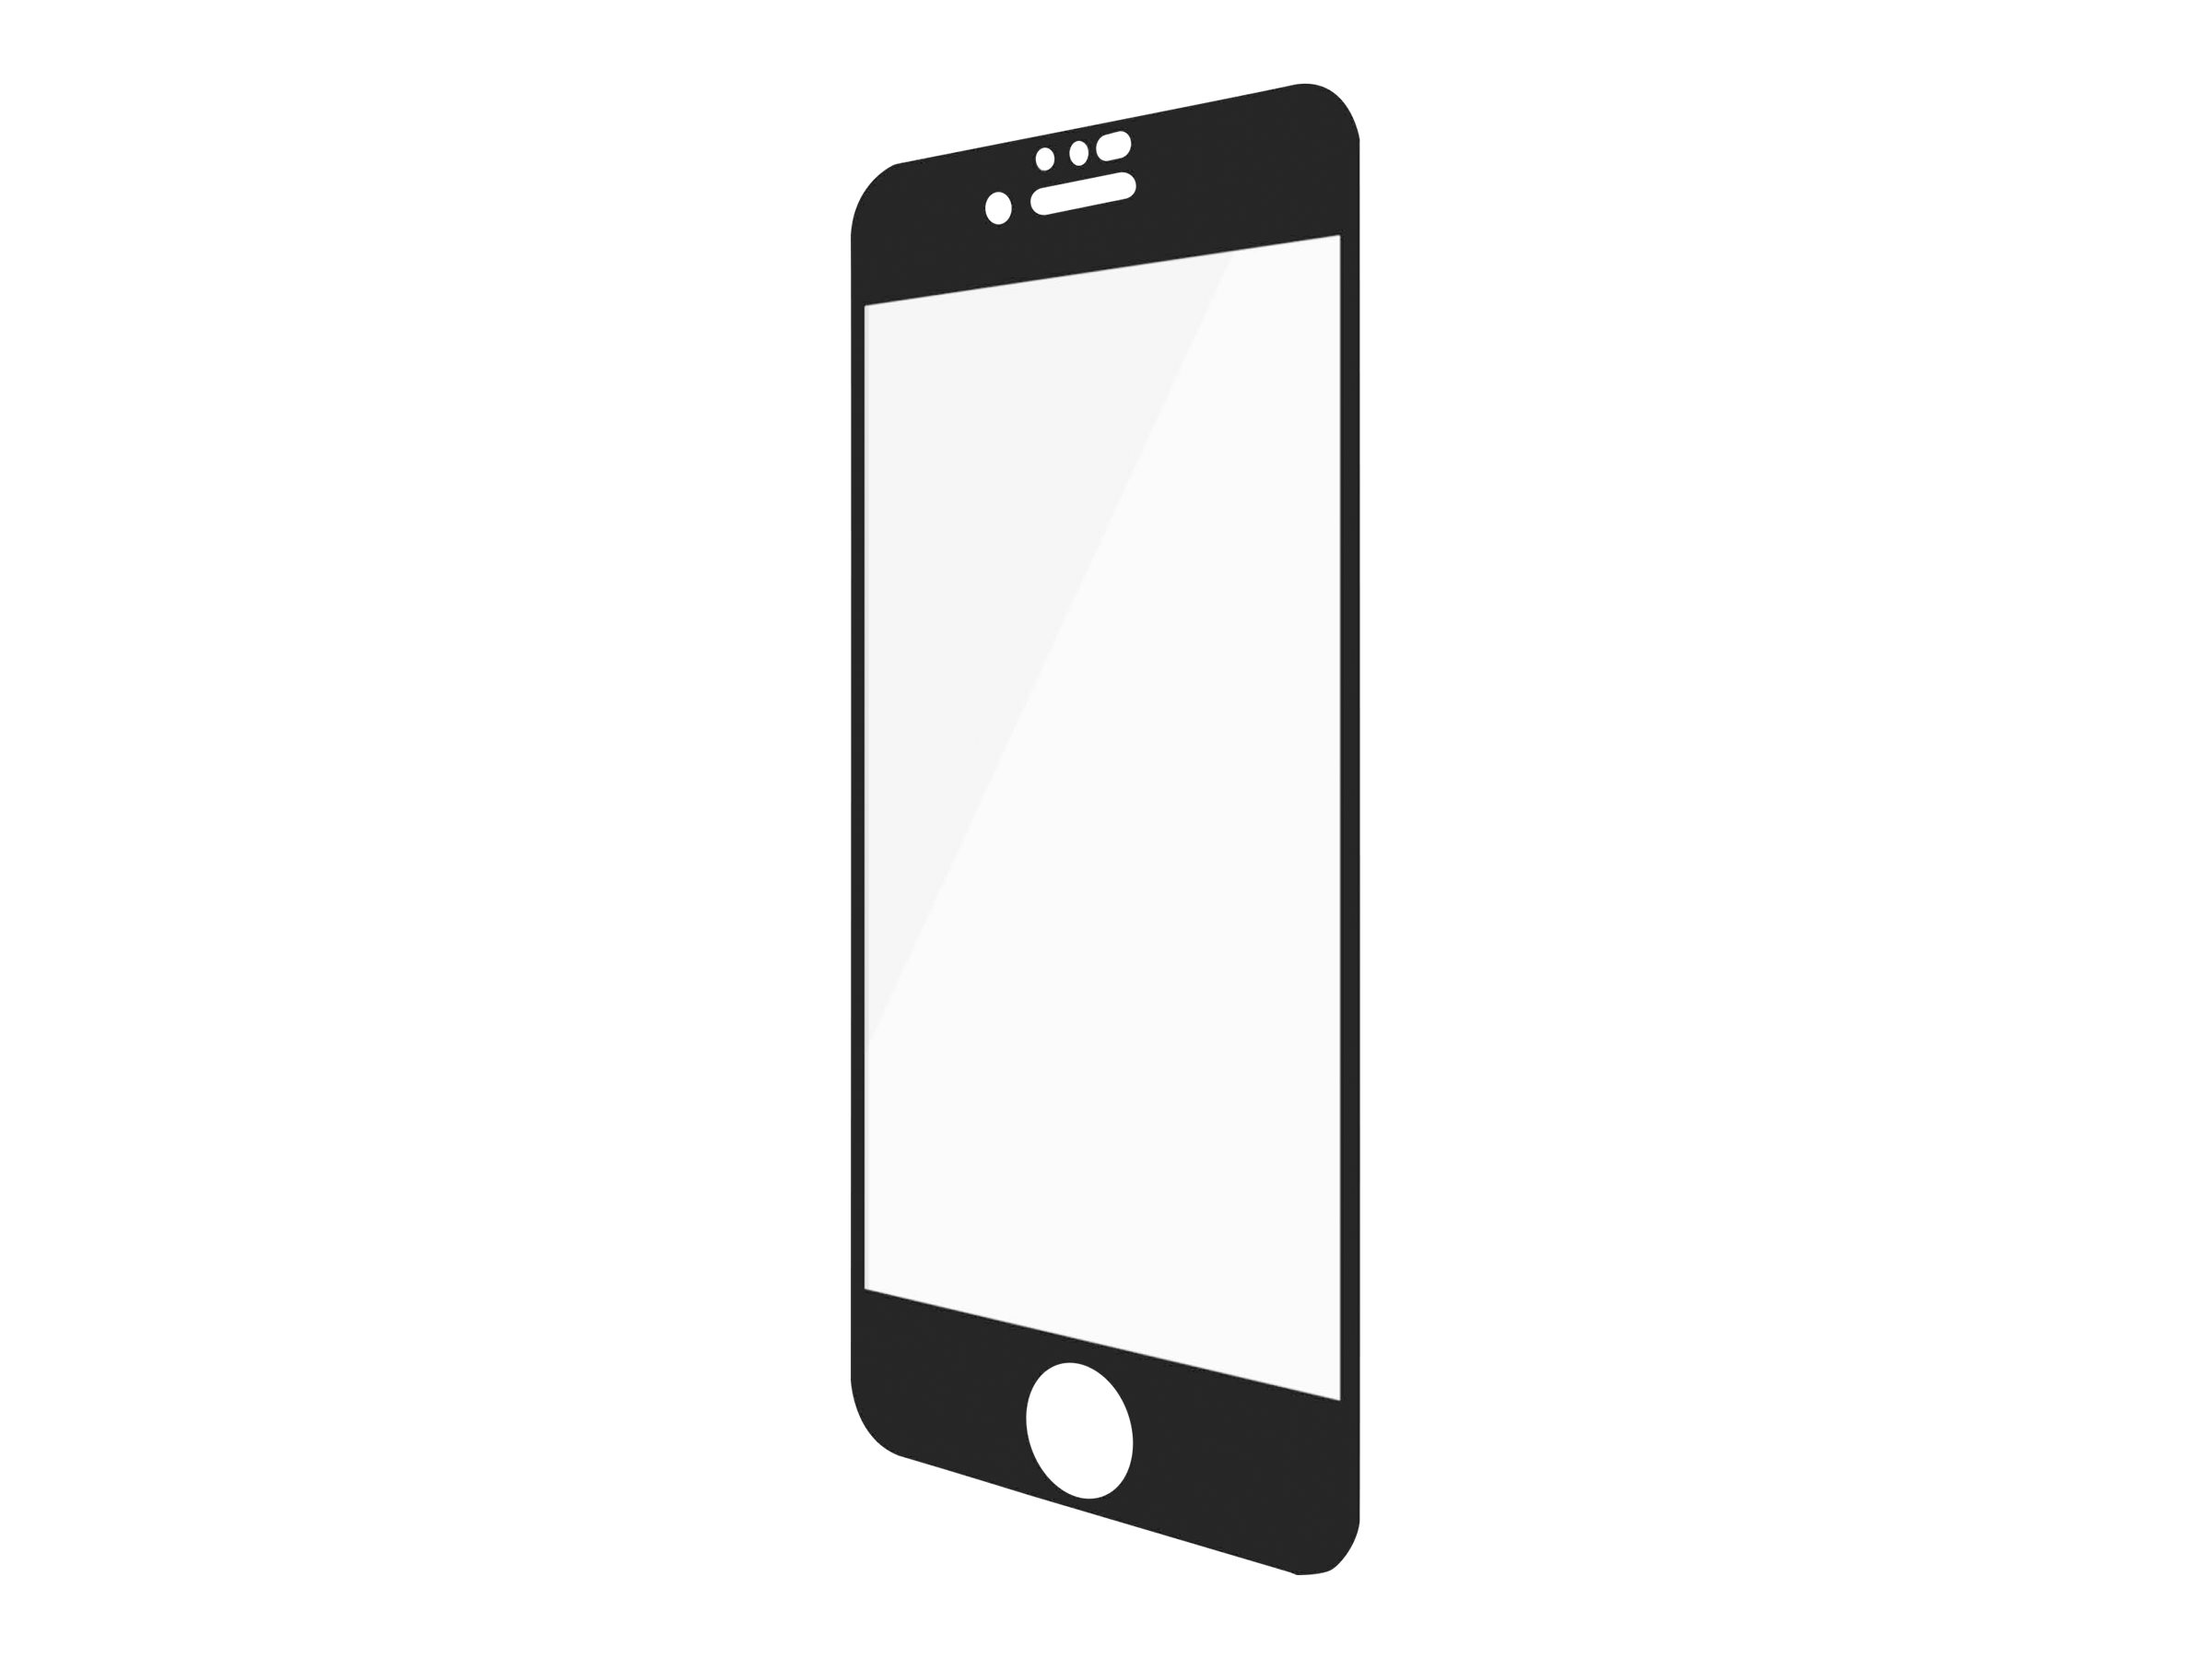 PanzerGlass Case Friendly - Bildschirmschutz für Handy - Glas - Rahmenfarbe schwarz - für Apple iPhone 6, 6s, 7, 8, SE (2. Gener